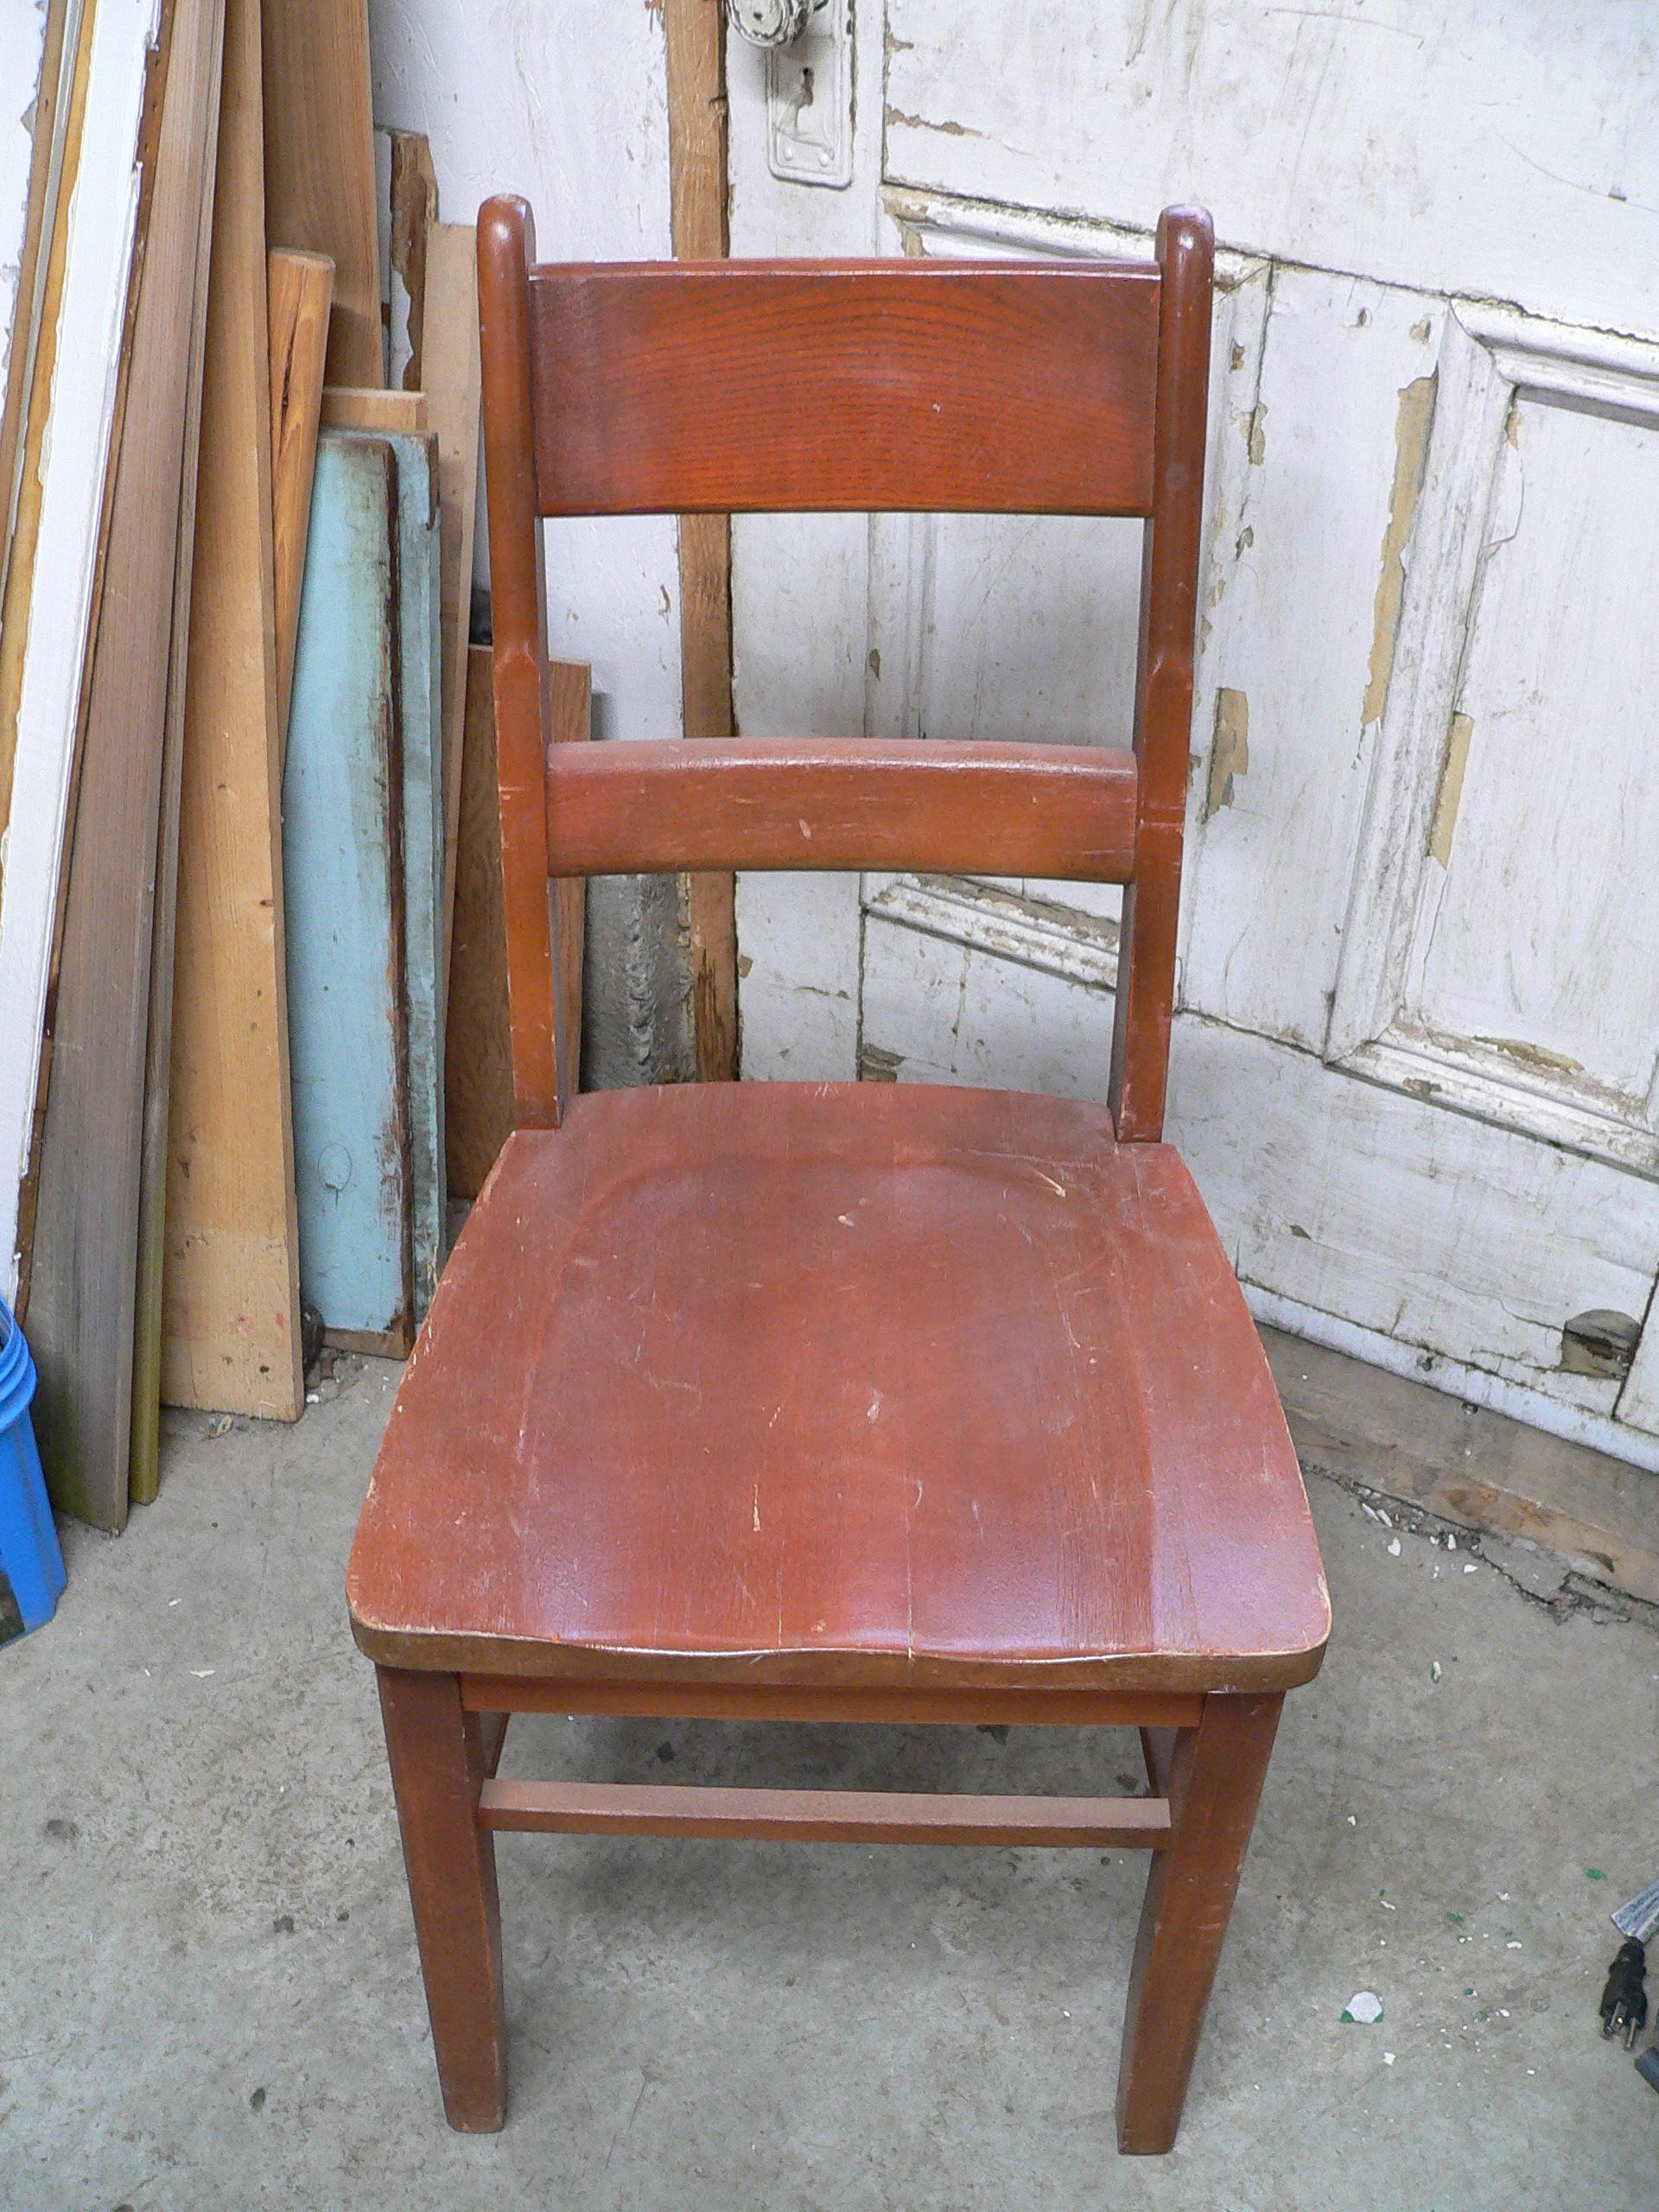 Chaise antique # 5892.19